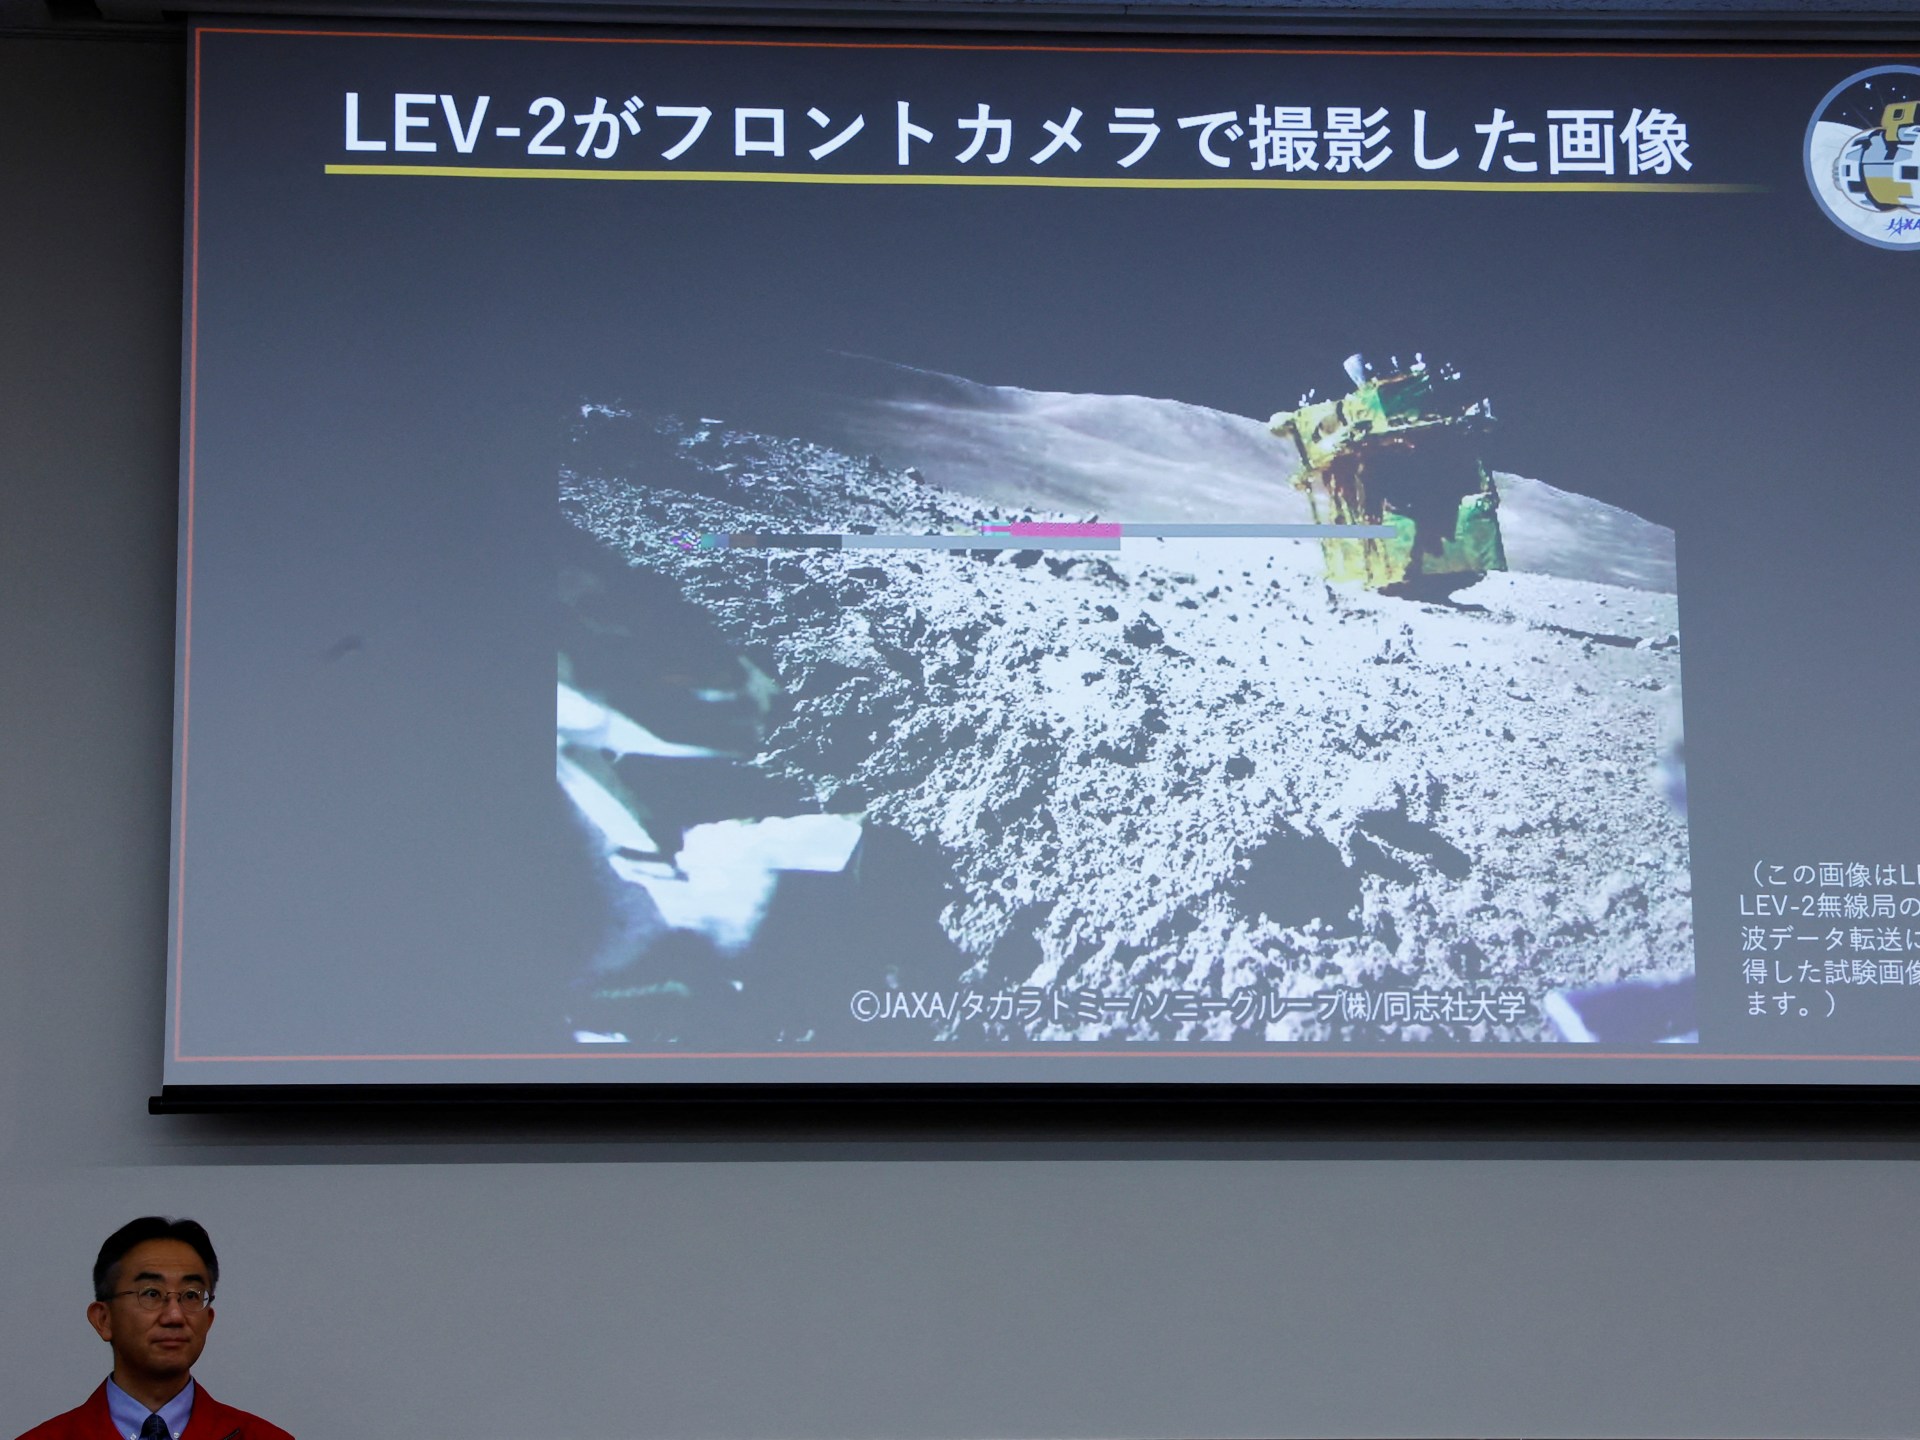 Agencia Espacial Japonesa: El “francotirador lunar” japonés logra el aterrizaje preciso |  noticias espaciales